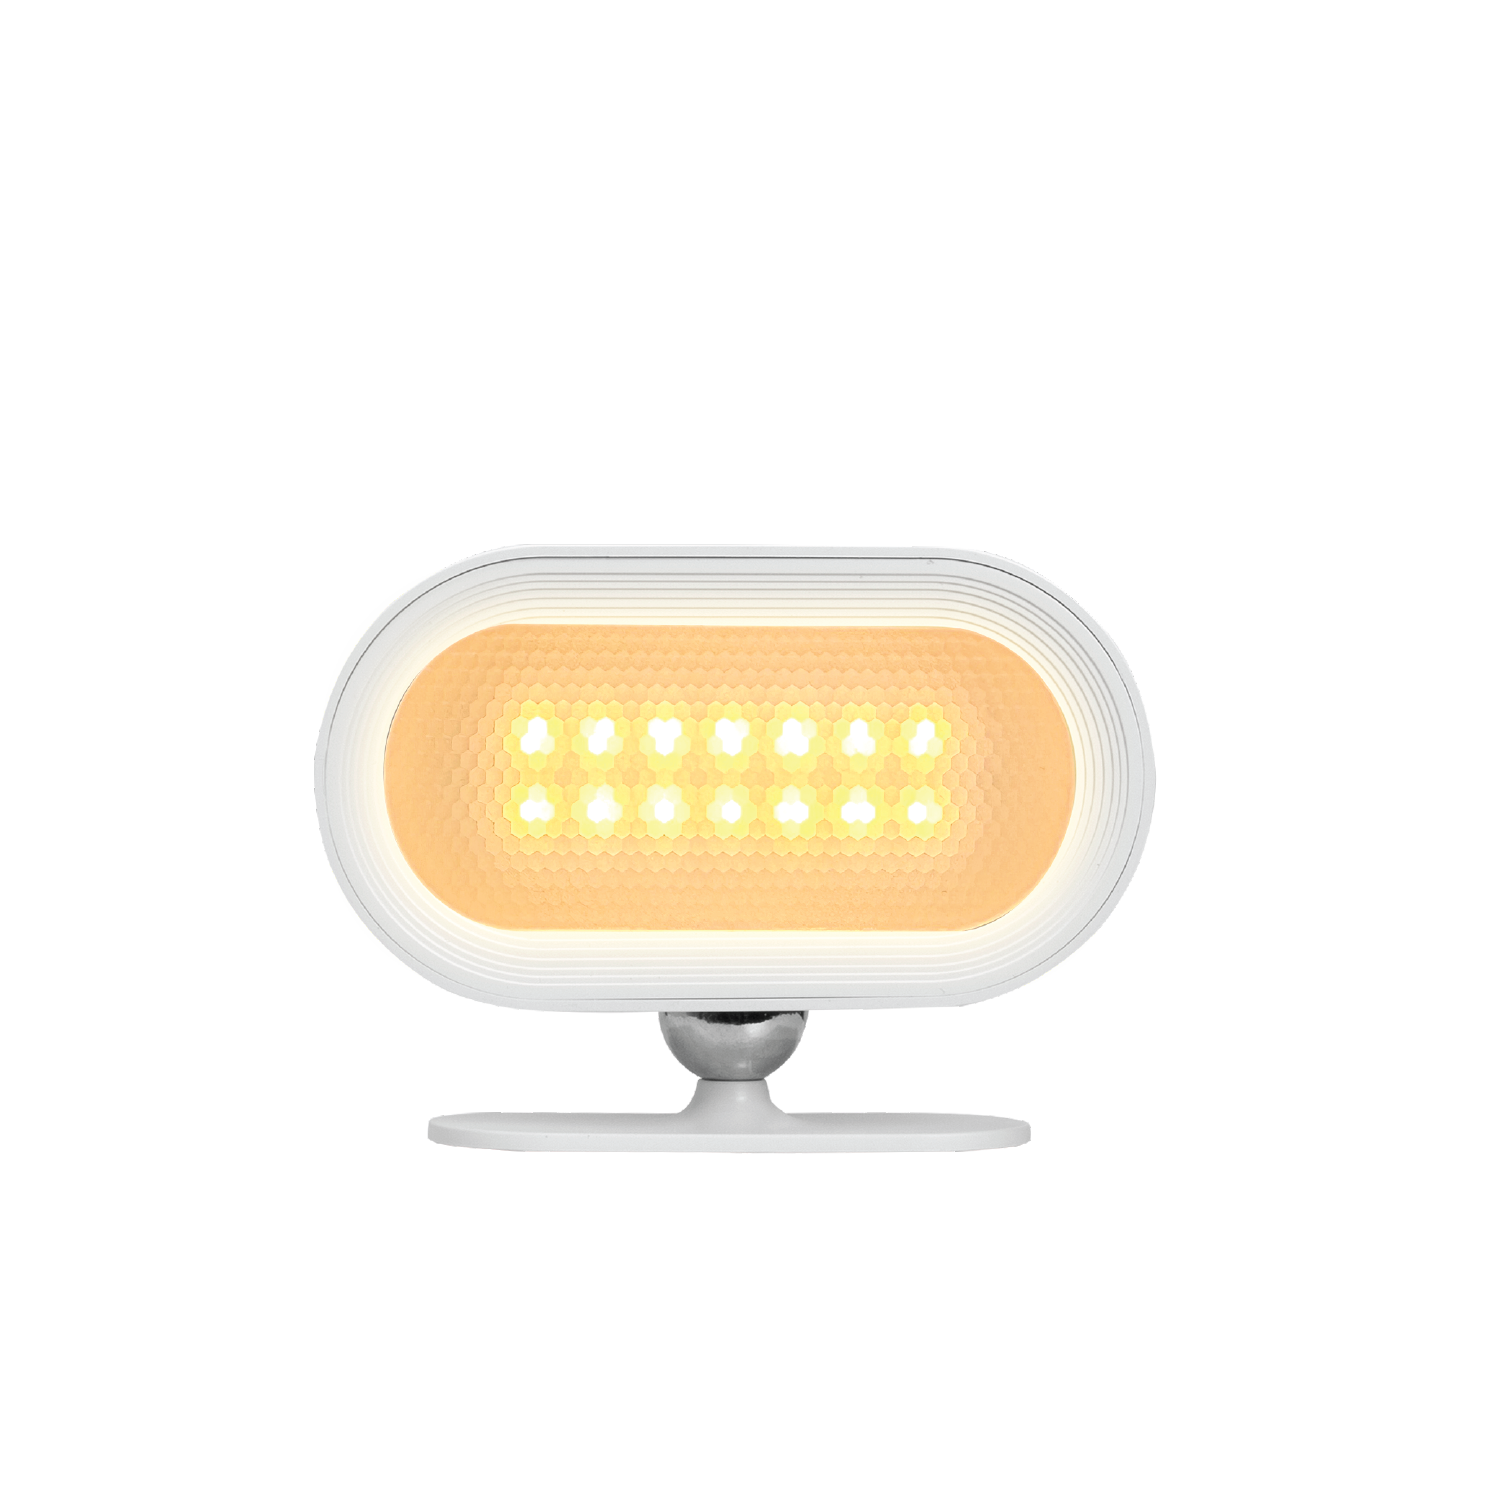 SnapLux Mood - Portable LED Mood-Light